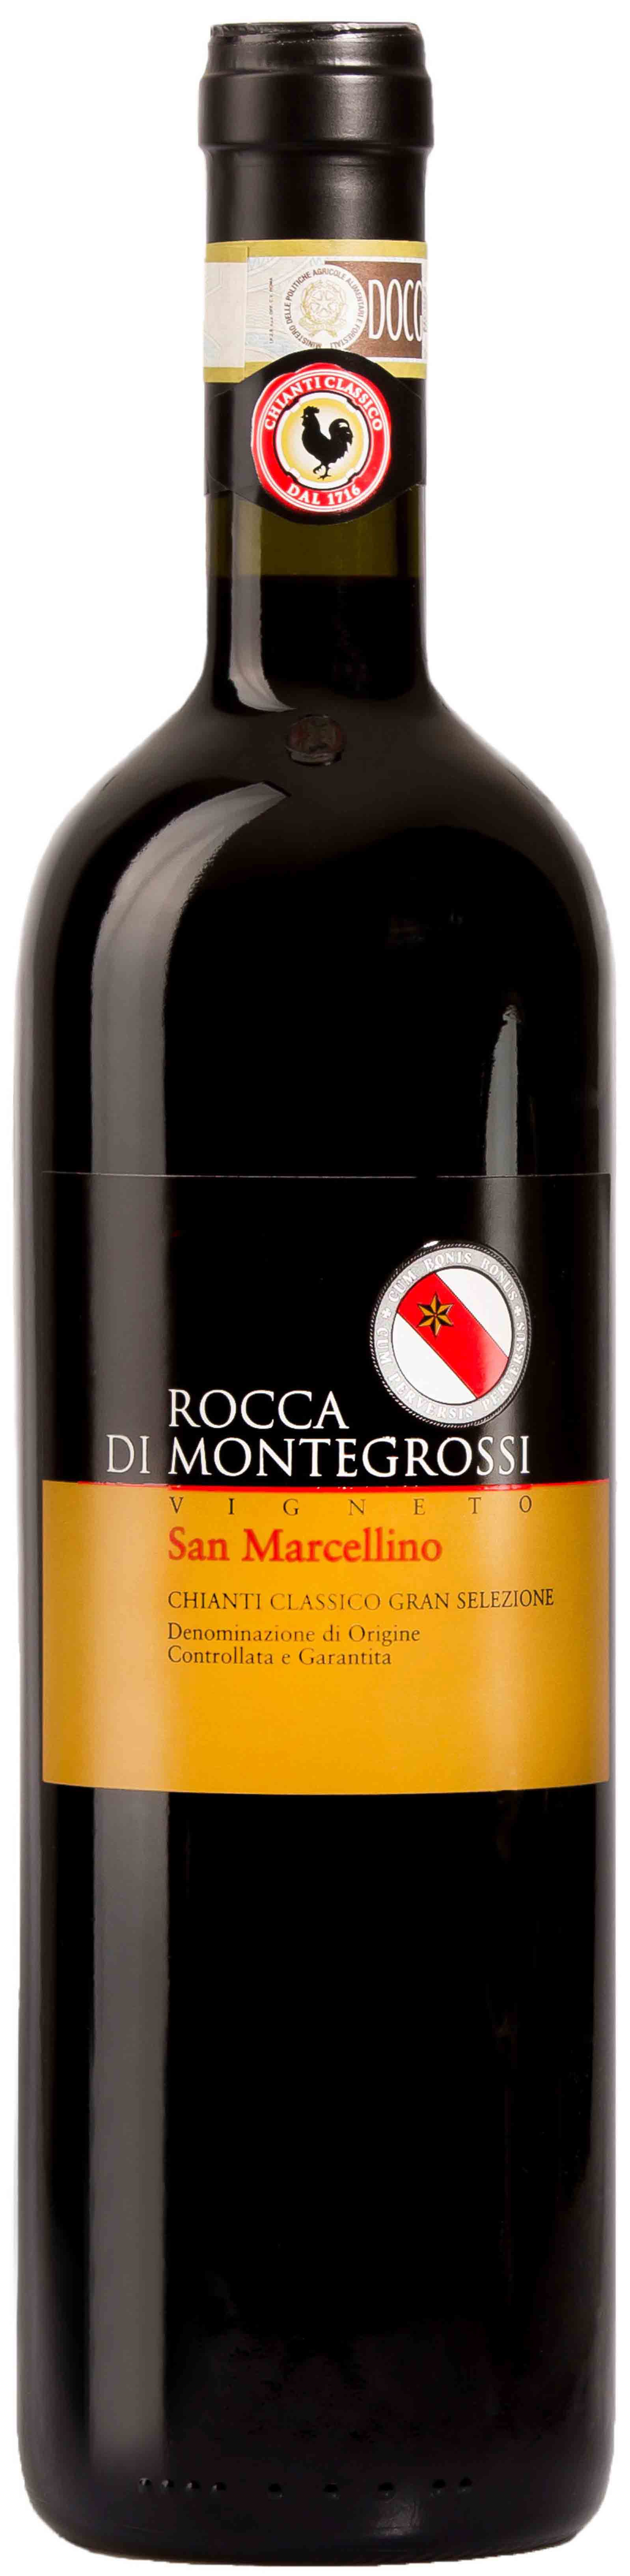 Rocca Di Montegrossi, Vigneto San Marcellino Chianti Classico Gran Selezione, 2011